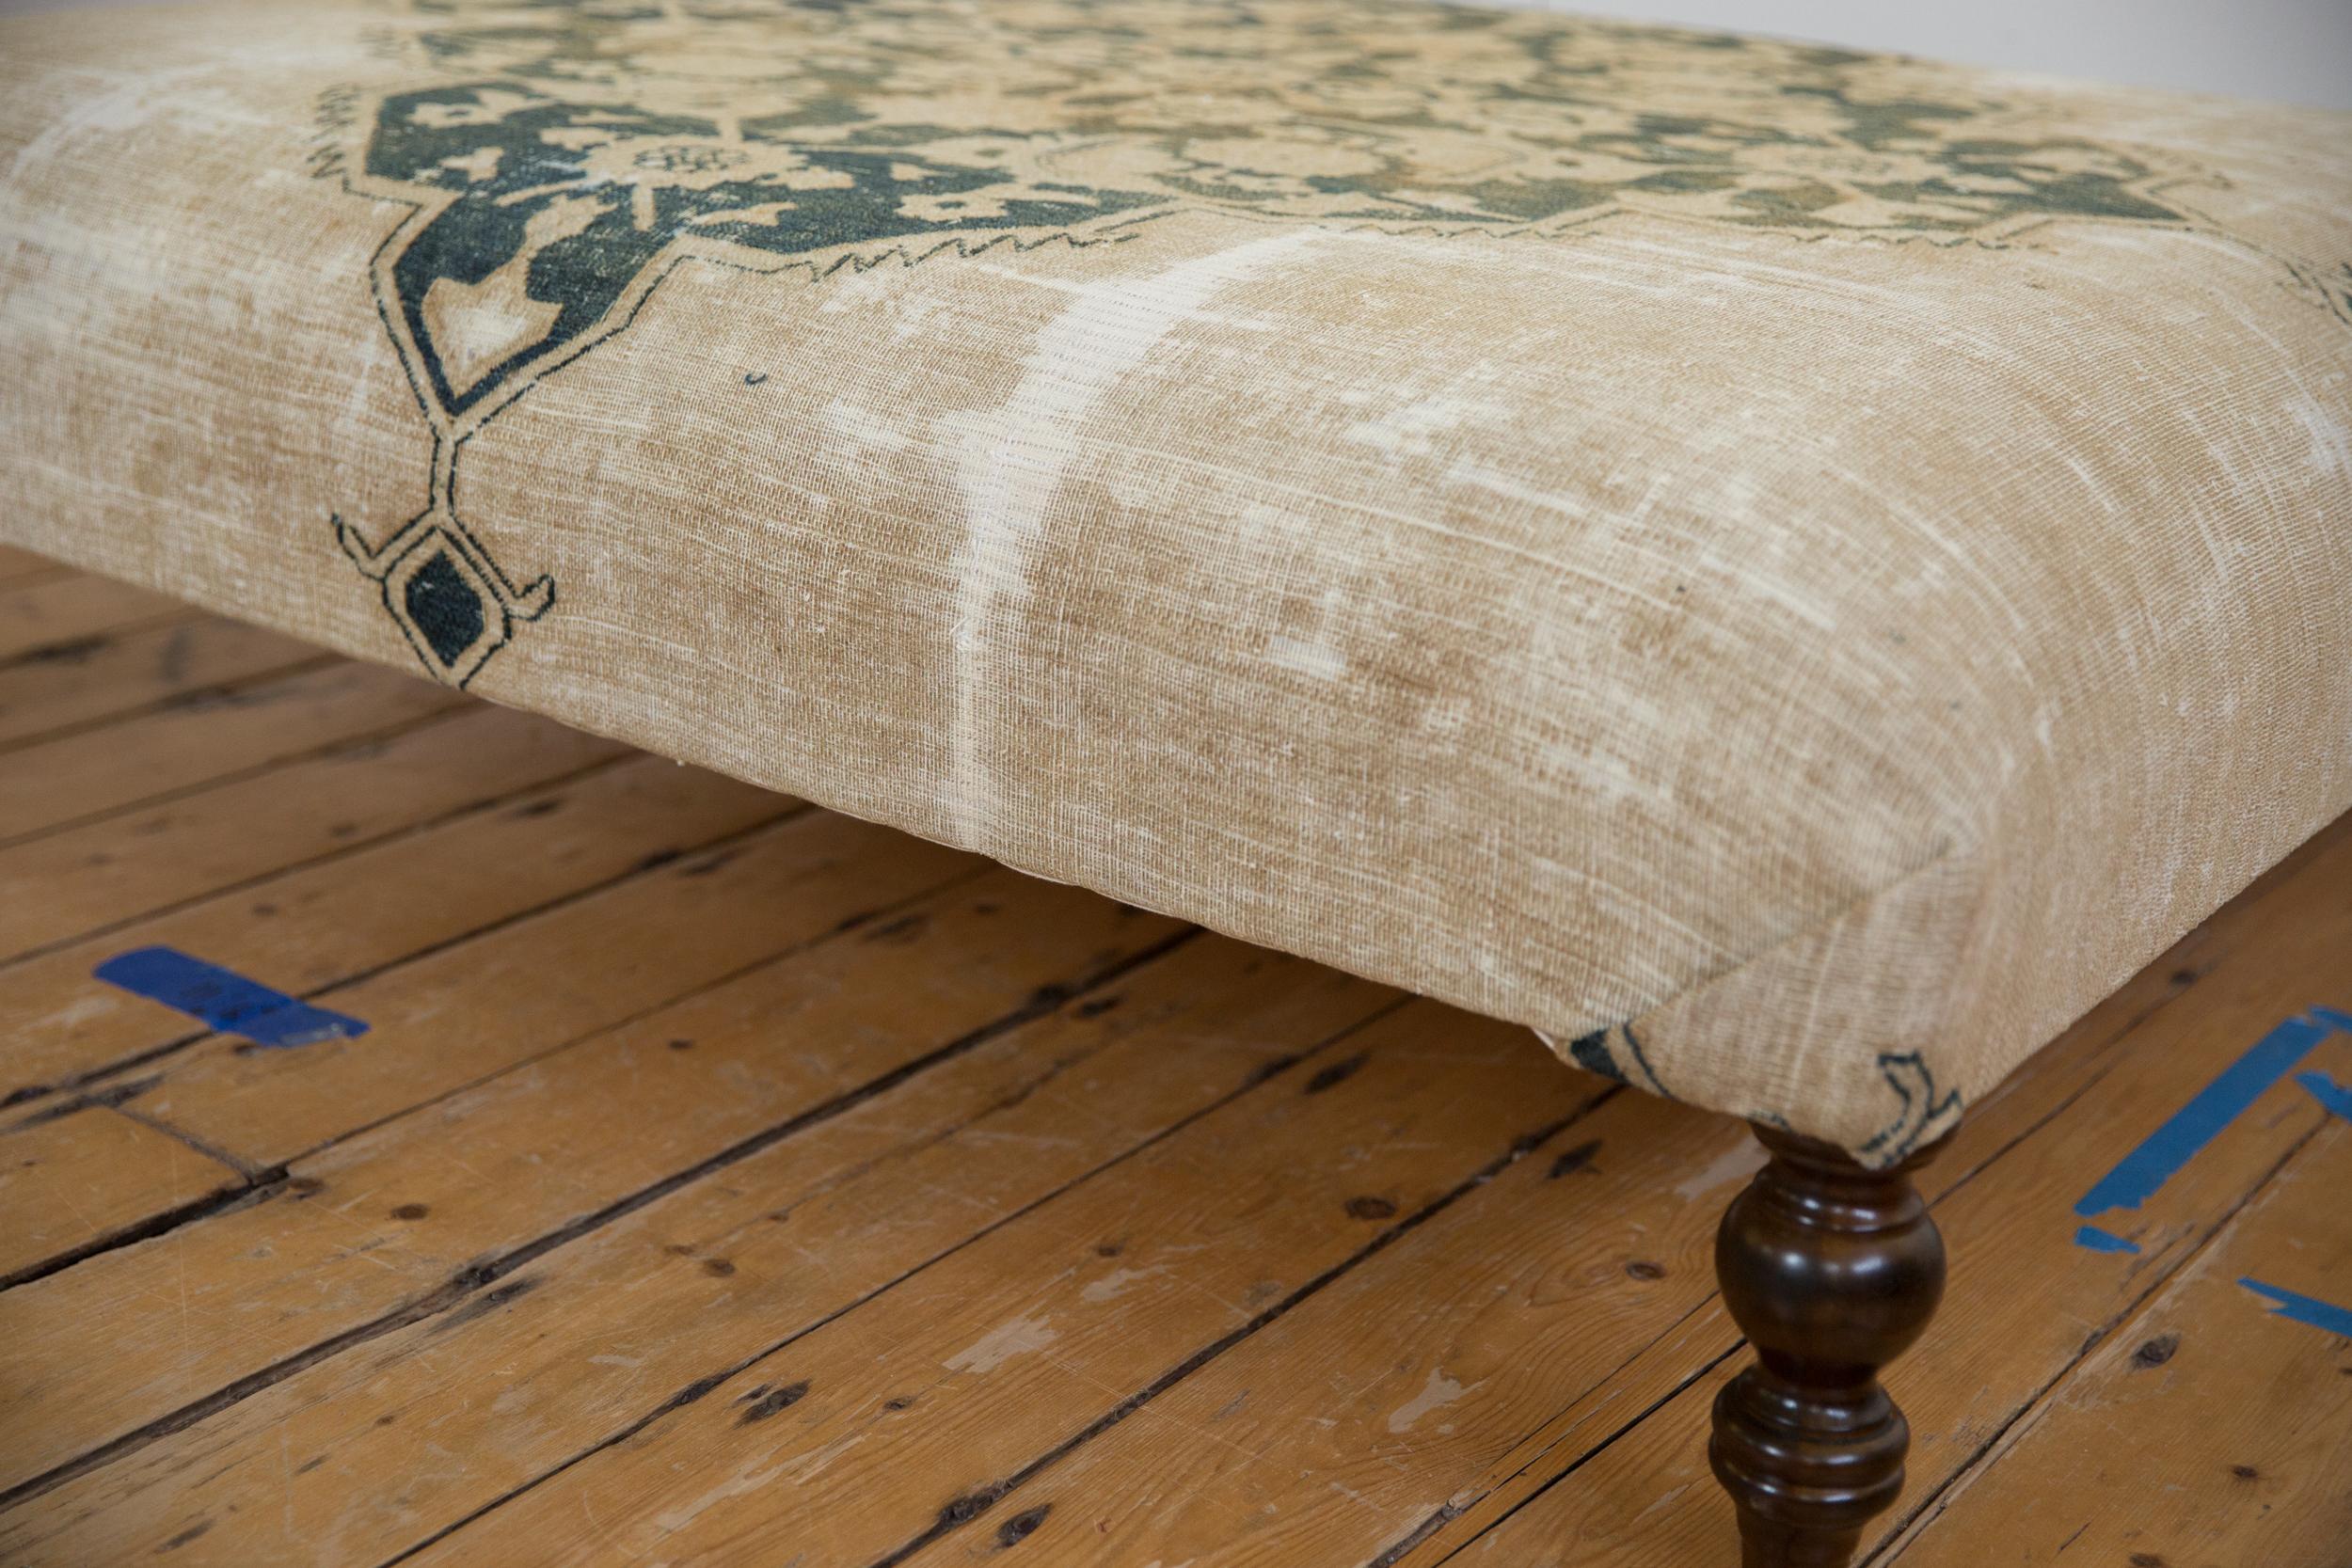 : : Table ottomane à tapis exclusive Old New House® ! Fabriqué en interne dans notre studio de Katonah NY, à partir d'un fragment de tapis persan Doroksh antique / vintage (datant des années 1920) récupéré et réutilisé, avec des couleurs géniales